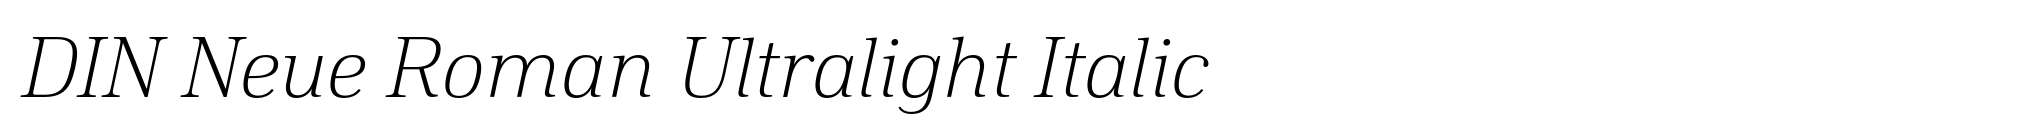 DIN Neue Roman Ultralight Italic image